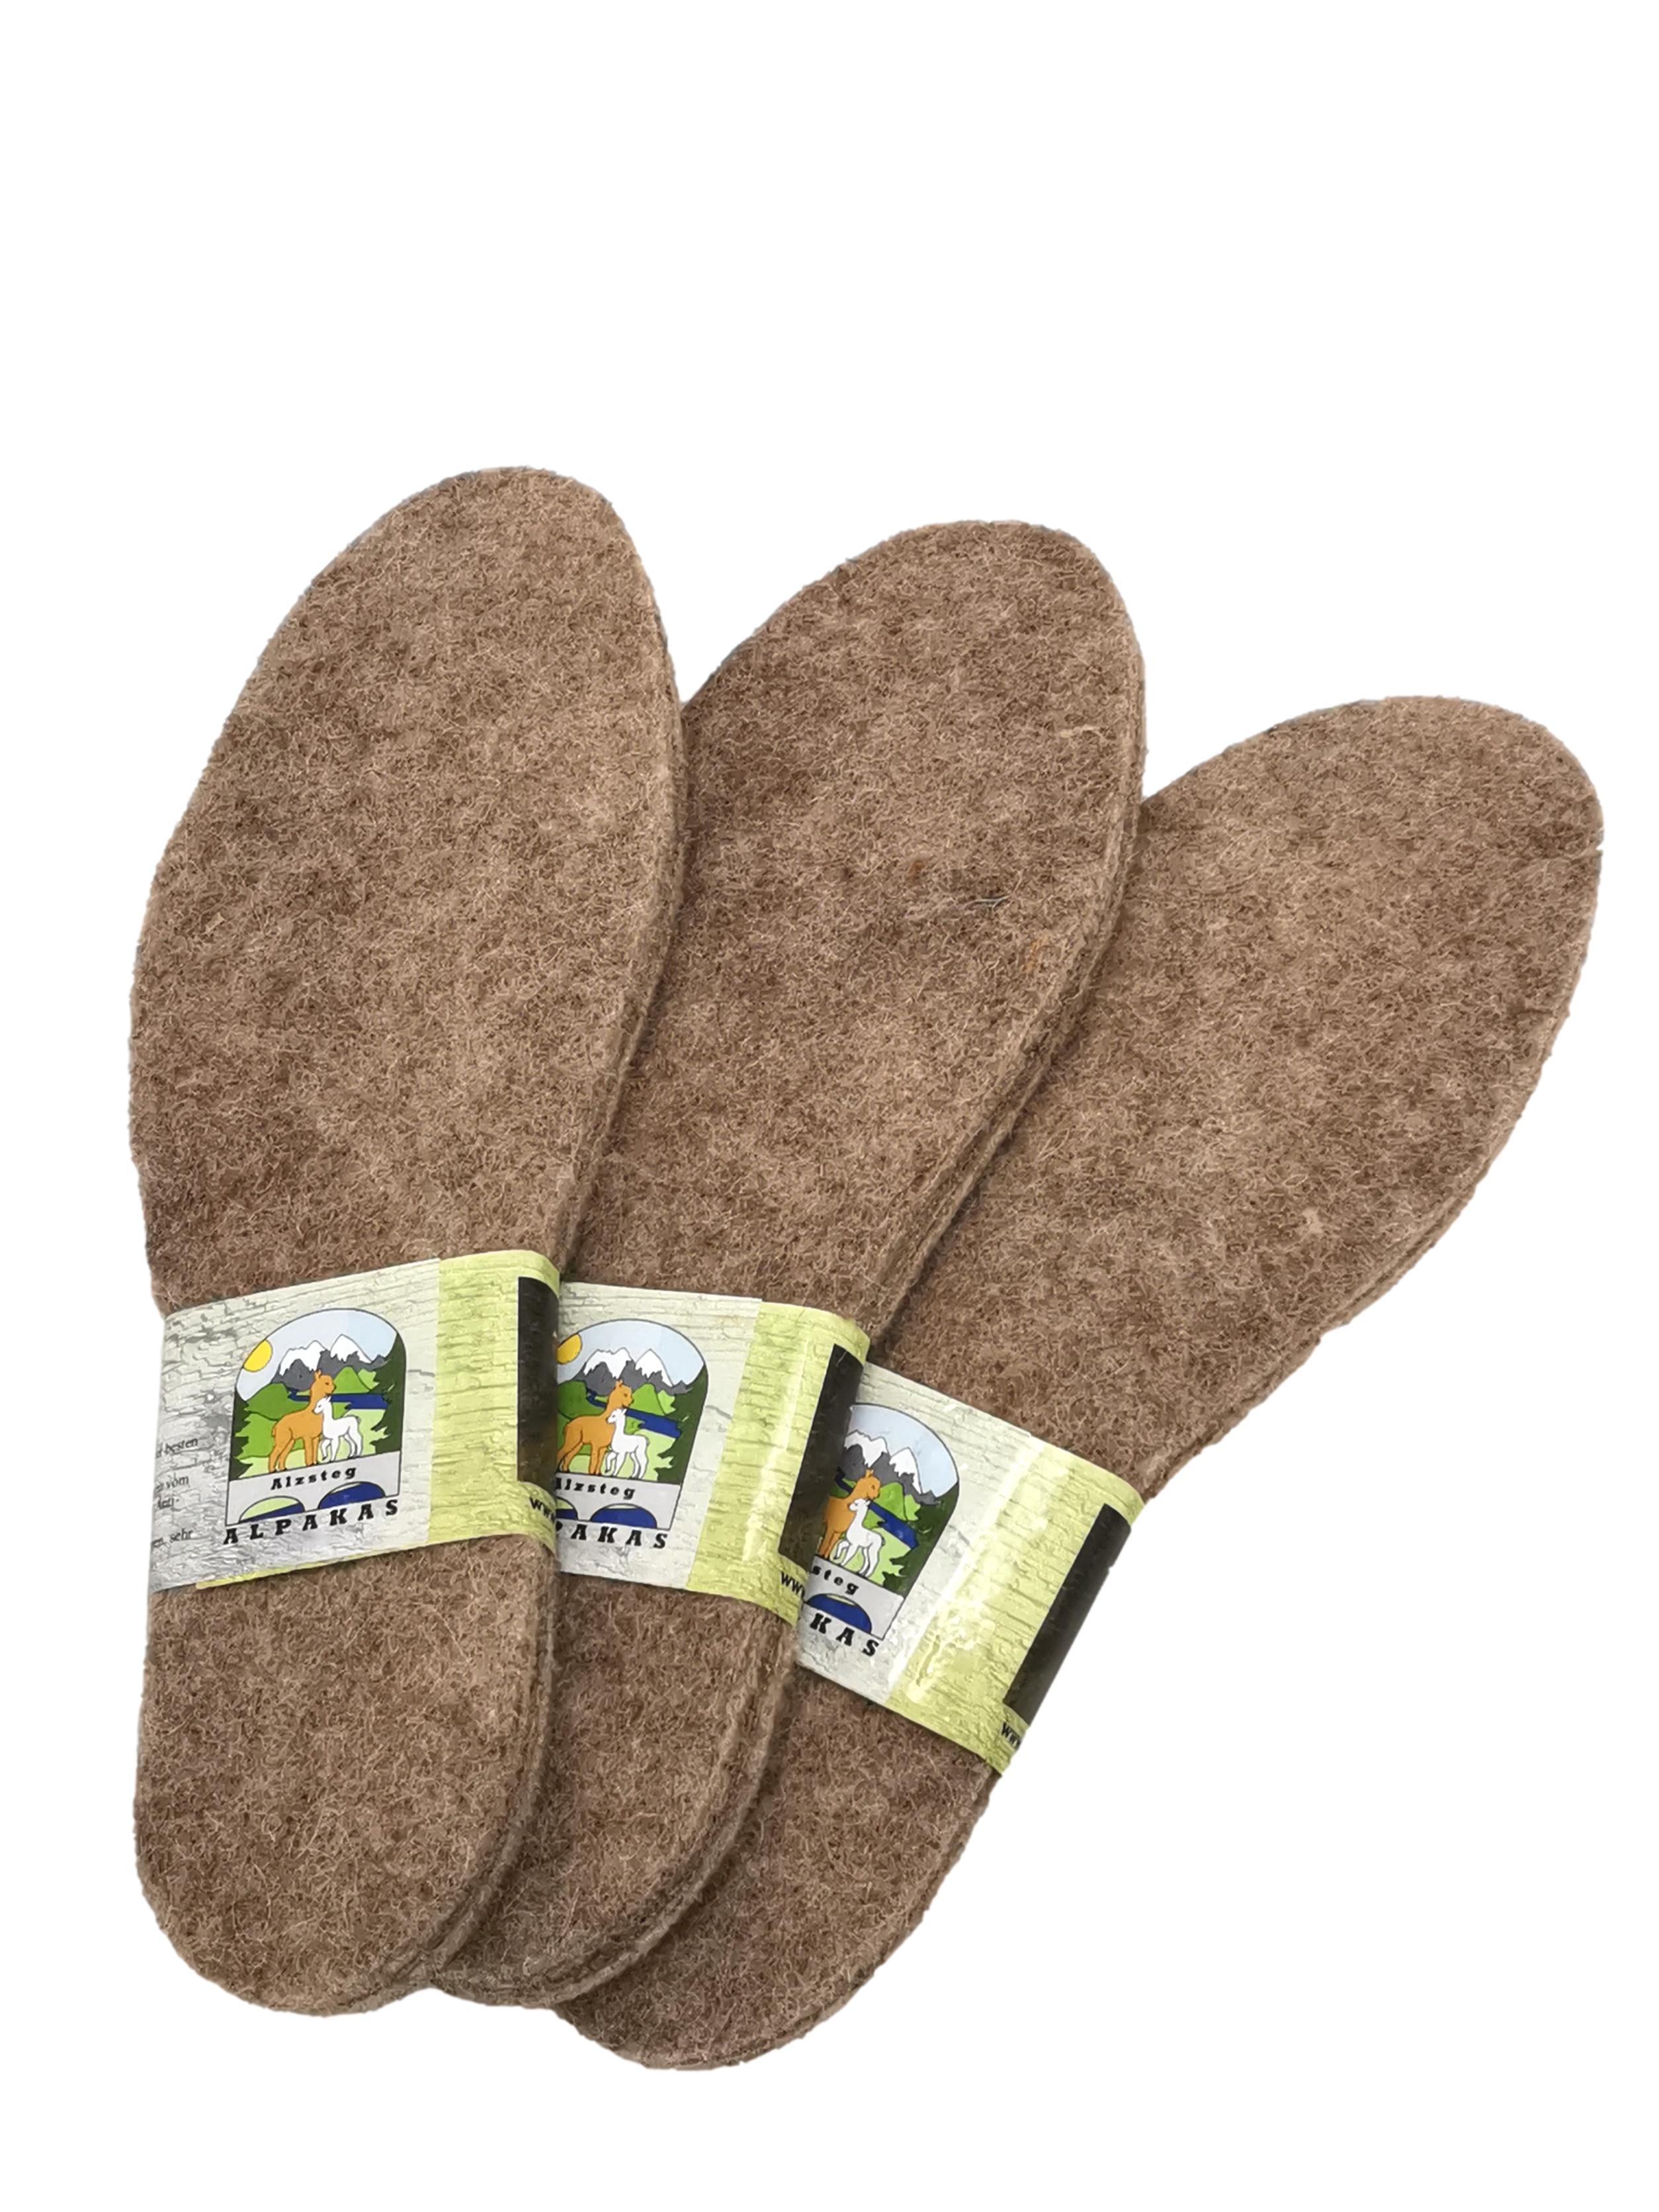 Schuheinlegesohlen wärmende Alpakasohle Extra warm, weich, atmungsaktiv, verschiedene Größen 36-51 | Alpaka Filz Thermoeinlage